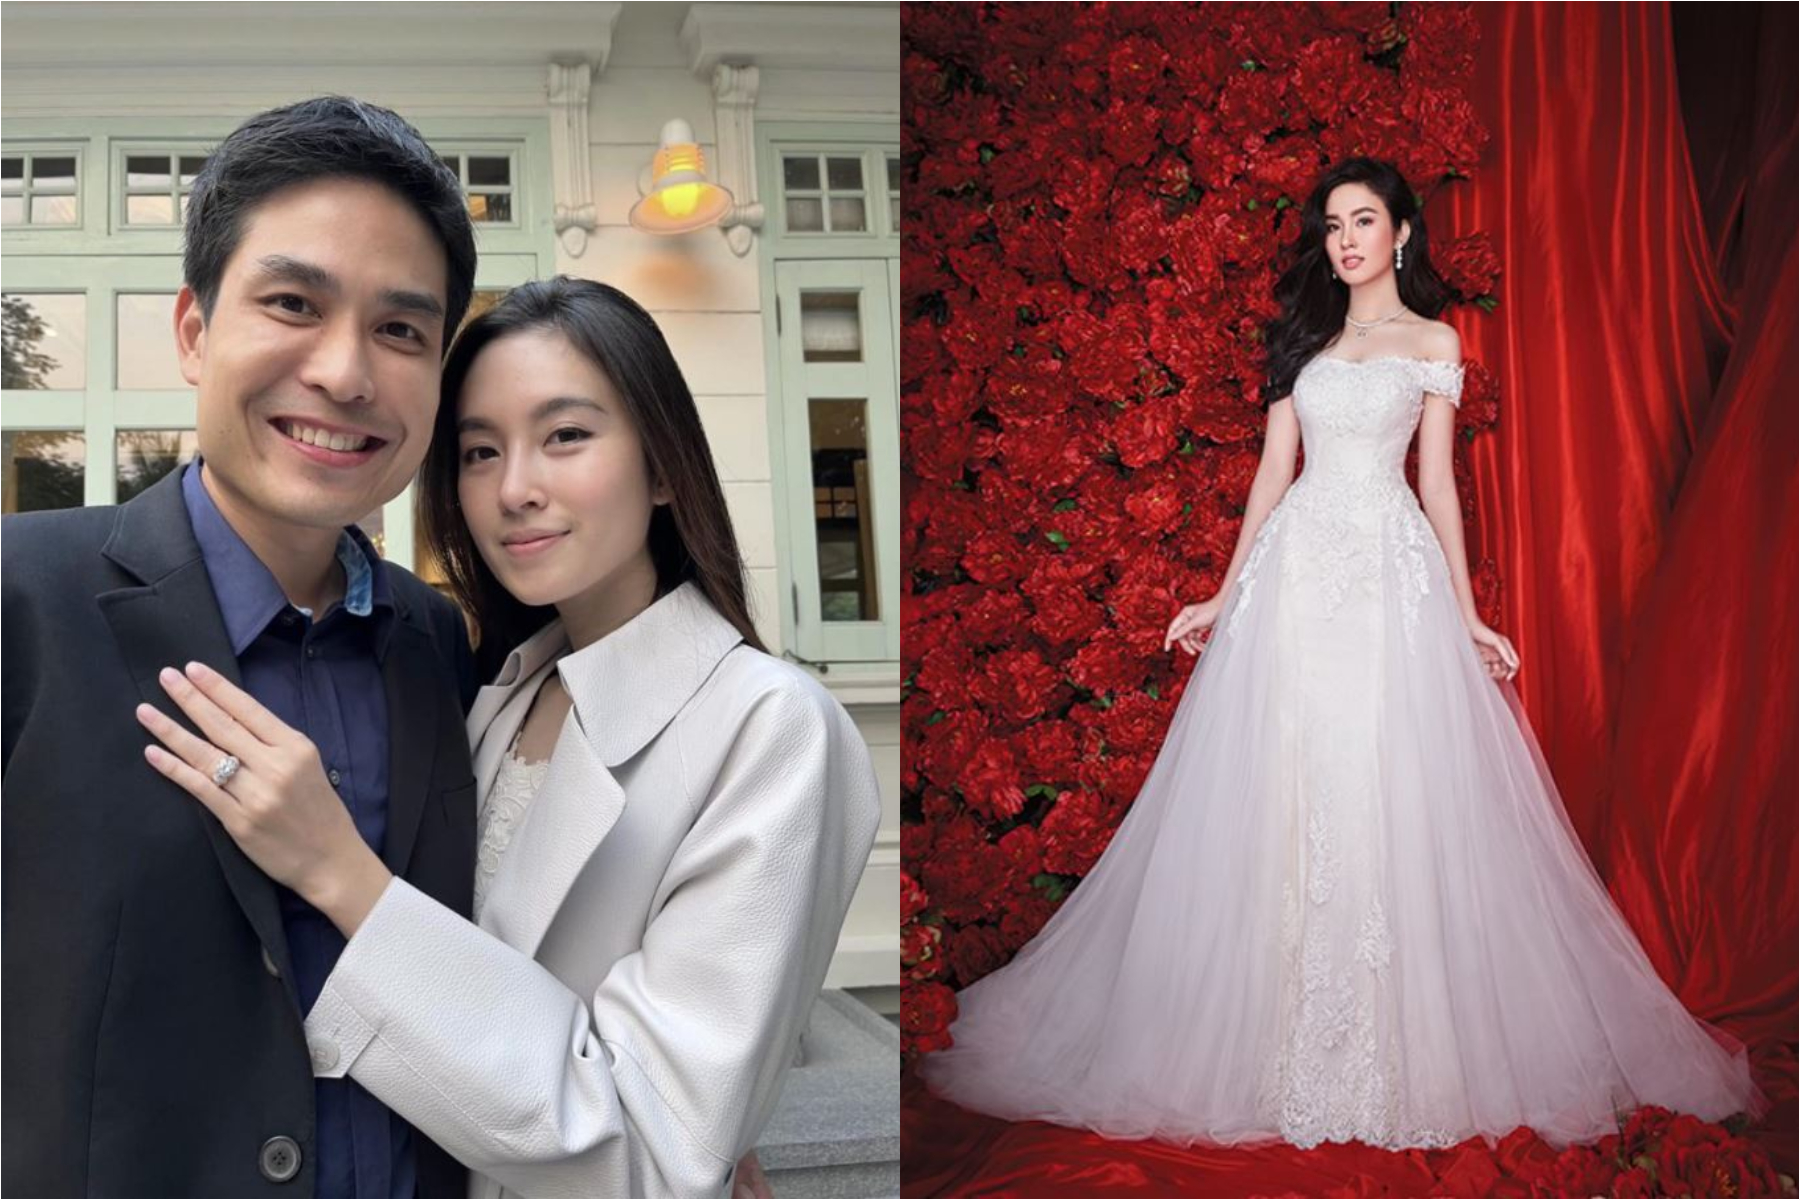 Báo Thái tiết lộ thêm về hôn lễ của Hoa hậu chuyển giới Nong Poy, cô dâu sẽ đeo 5 kg vàng trong ngày cưới - Ảnh 7.